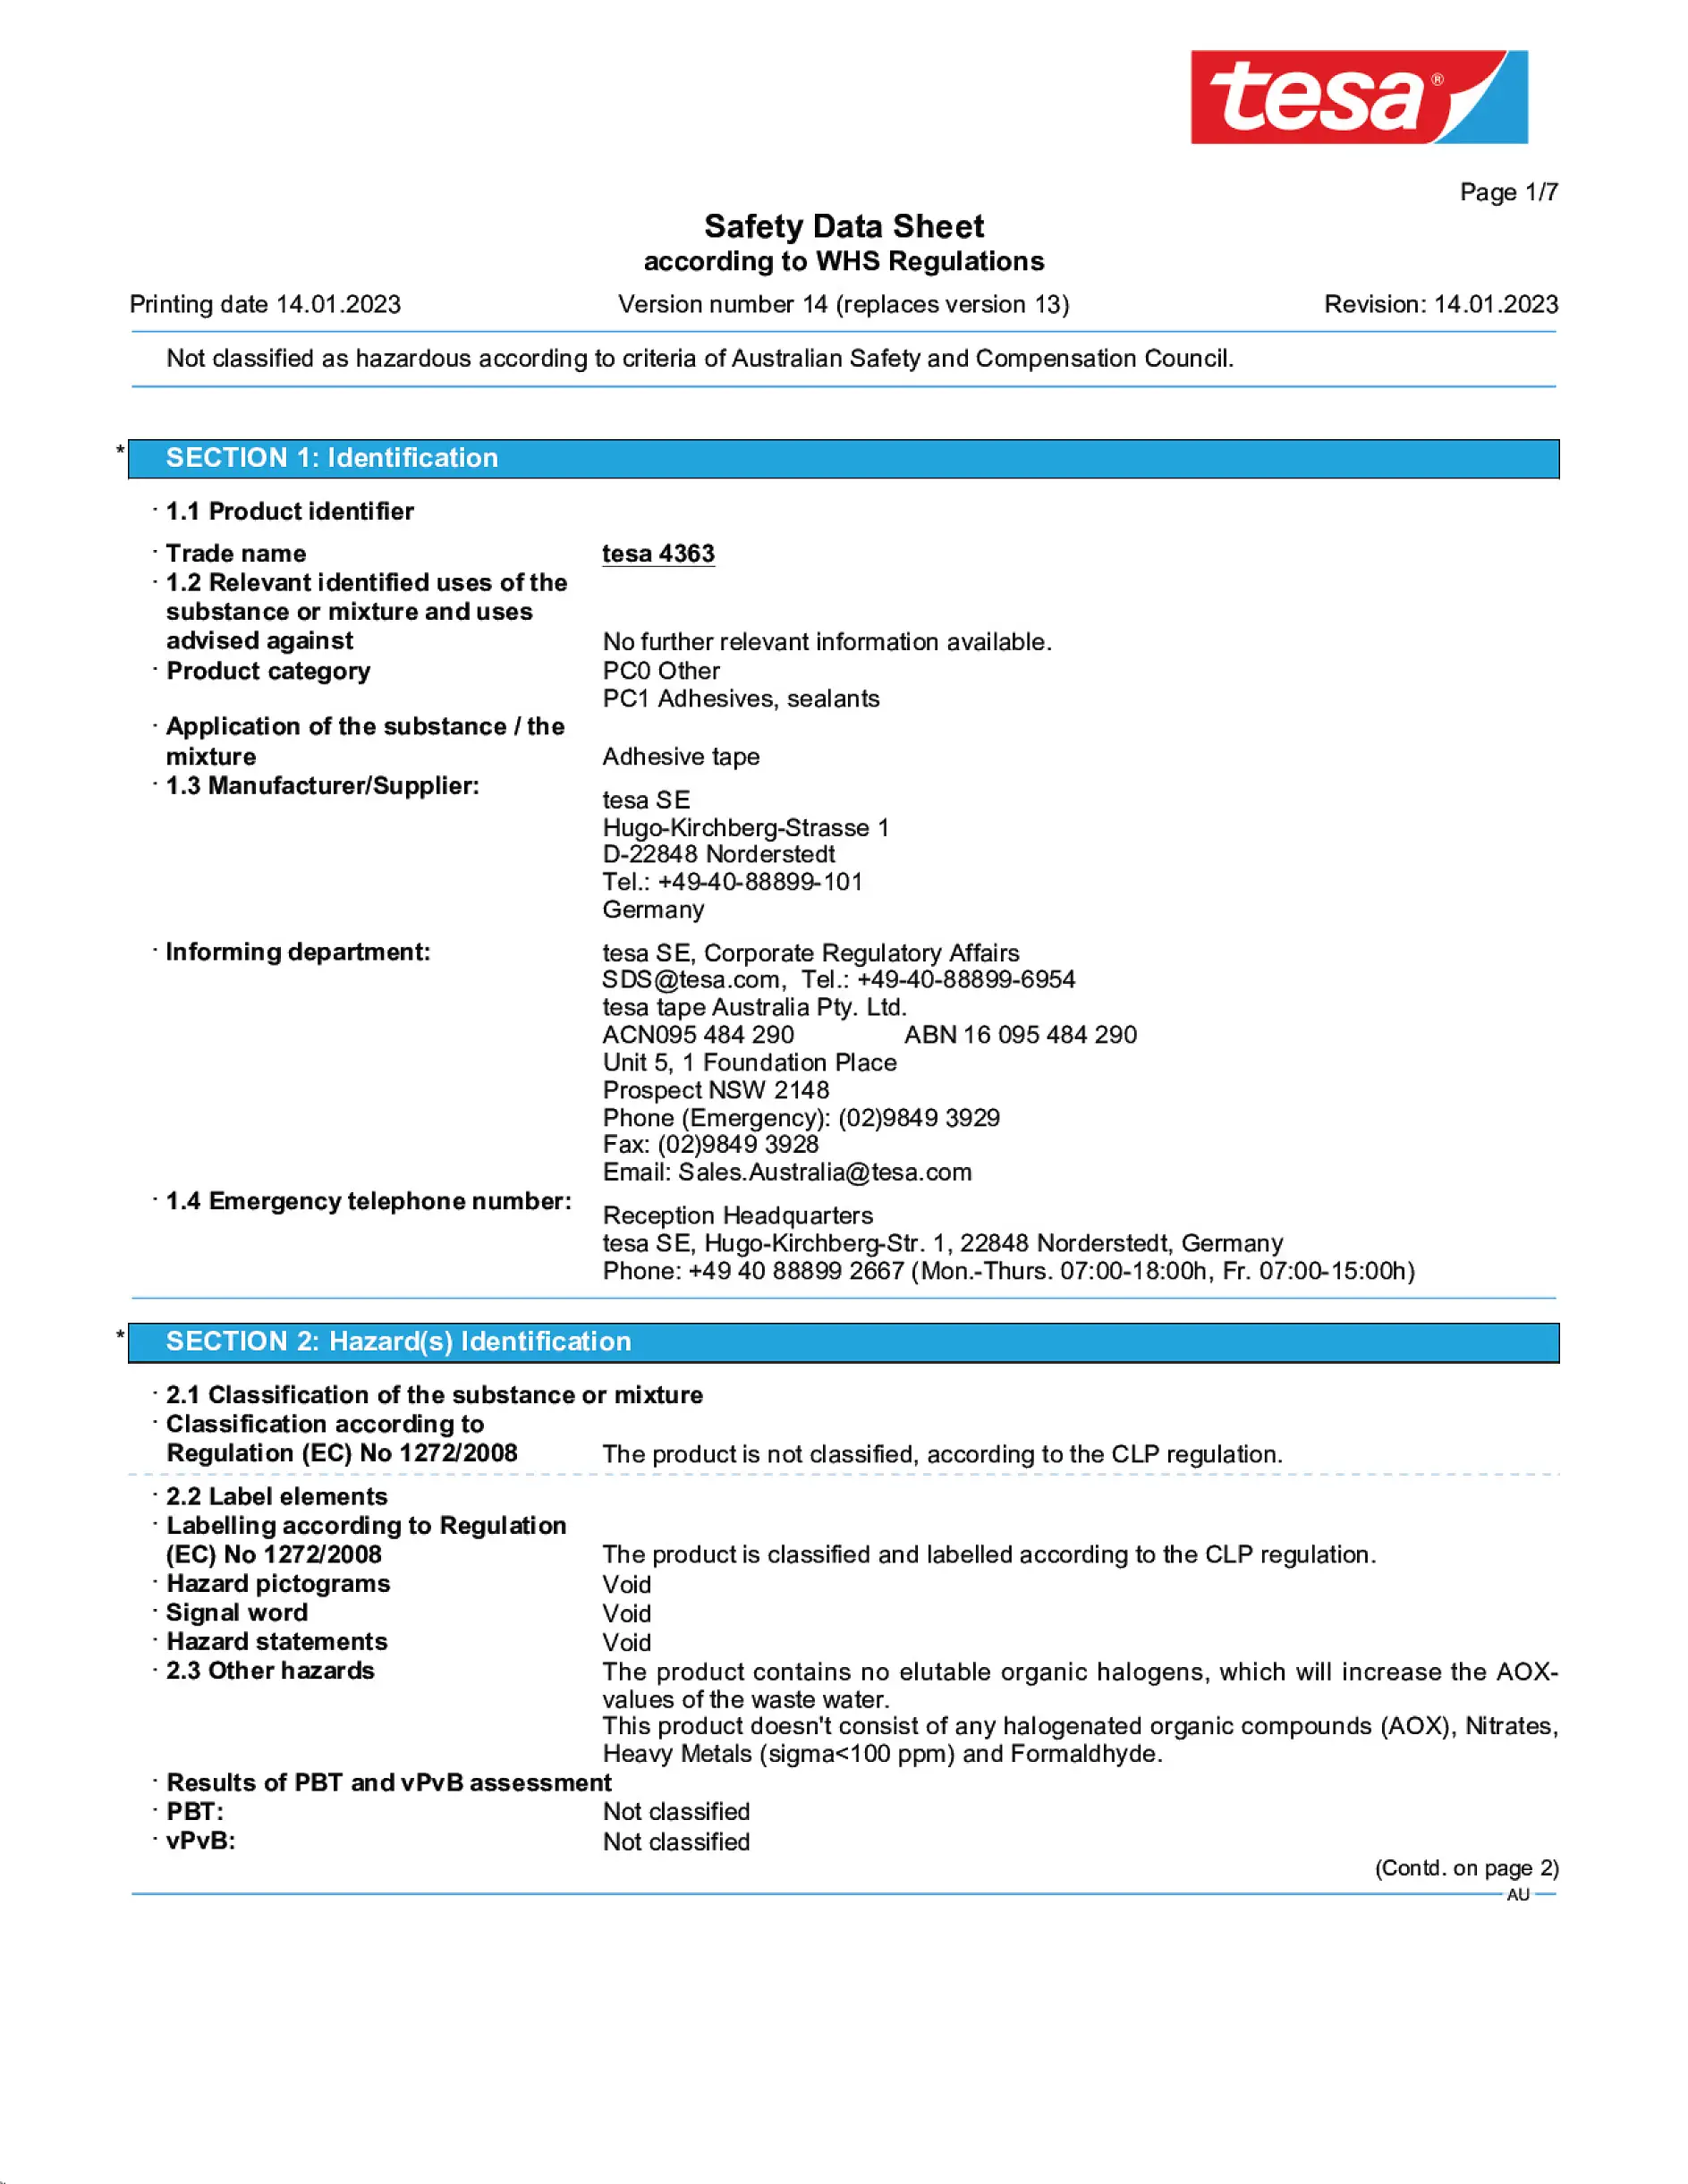 Safety data sheet_tesa® Professional 04363_en-AU_v14